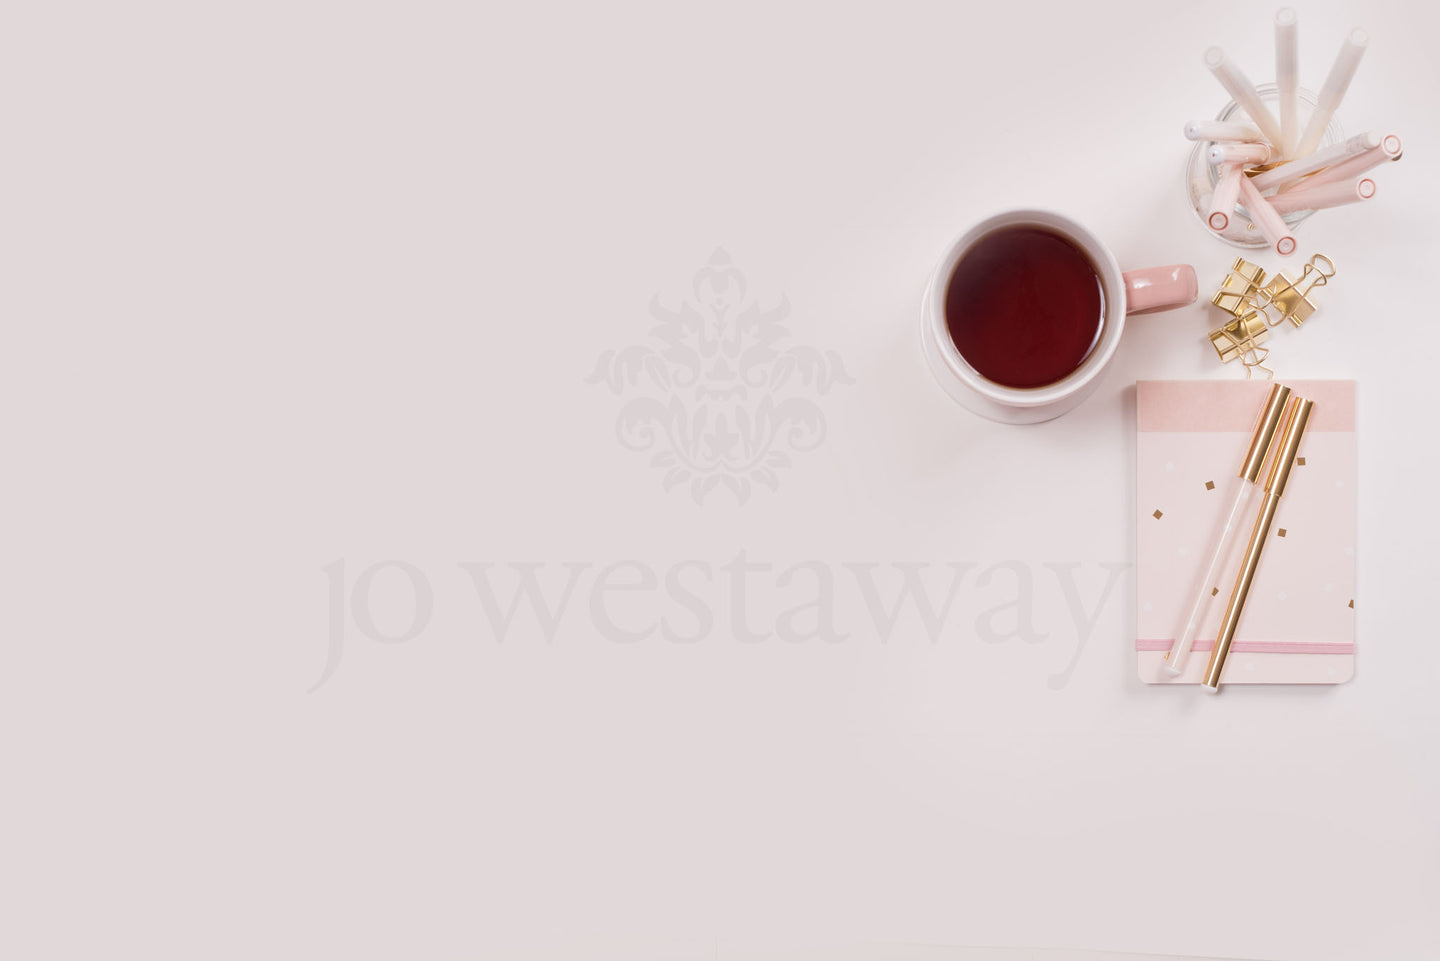 Jo Westaway stock: 190716-024